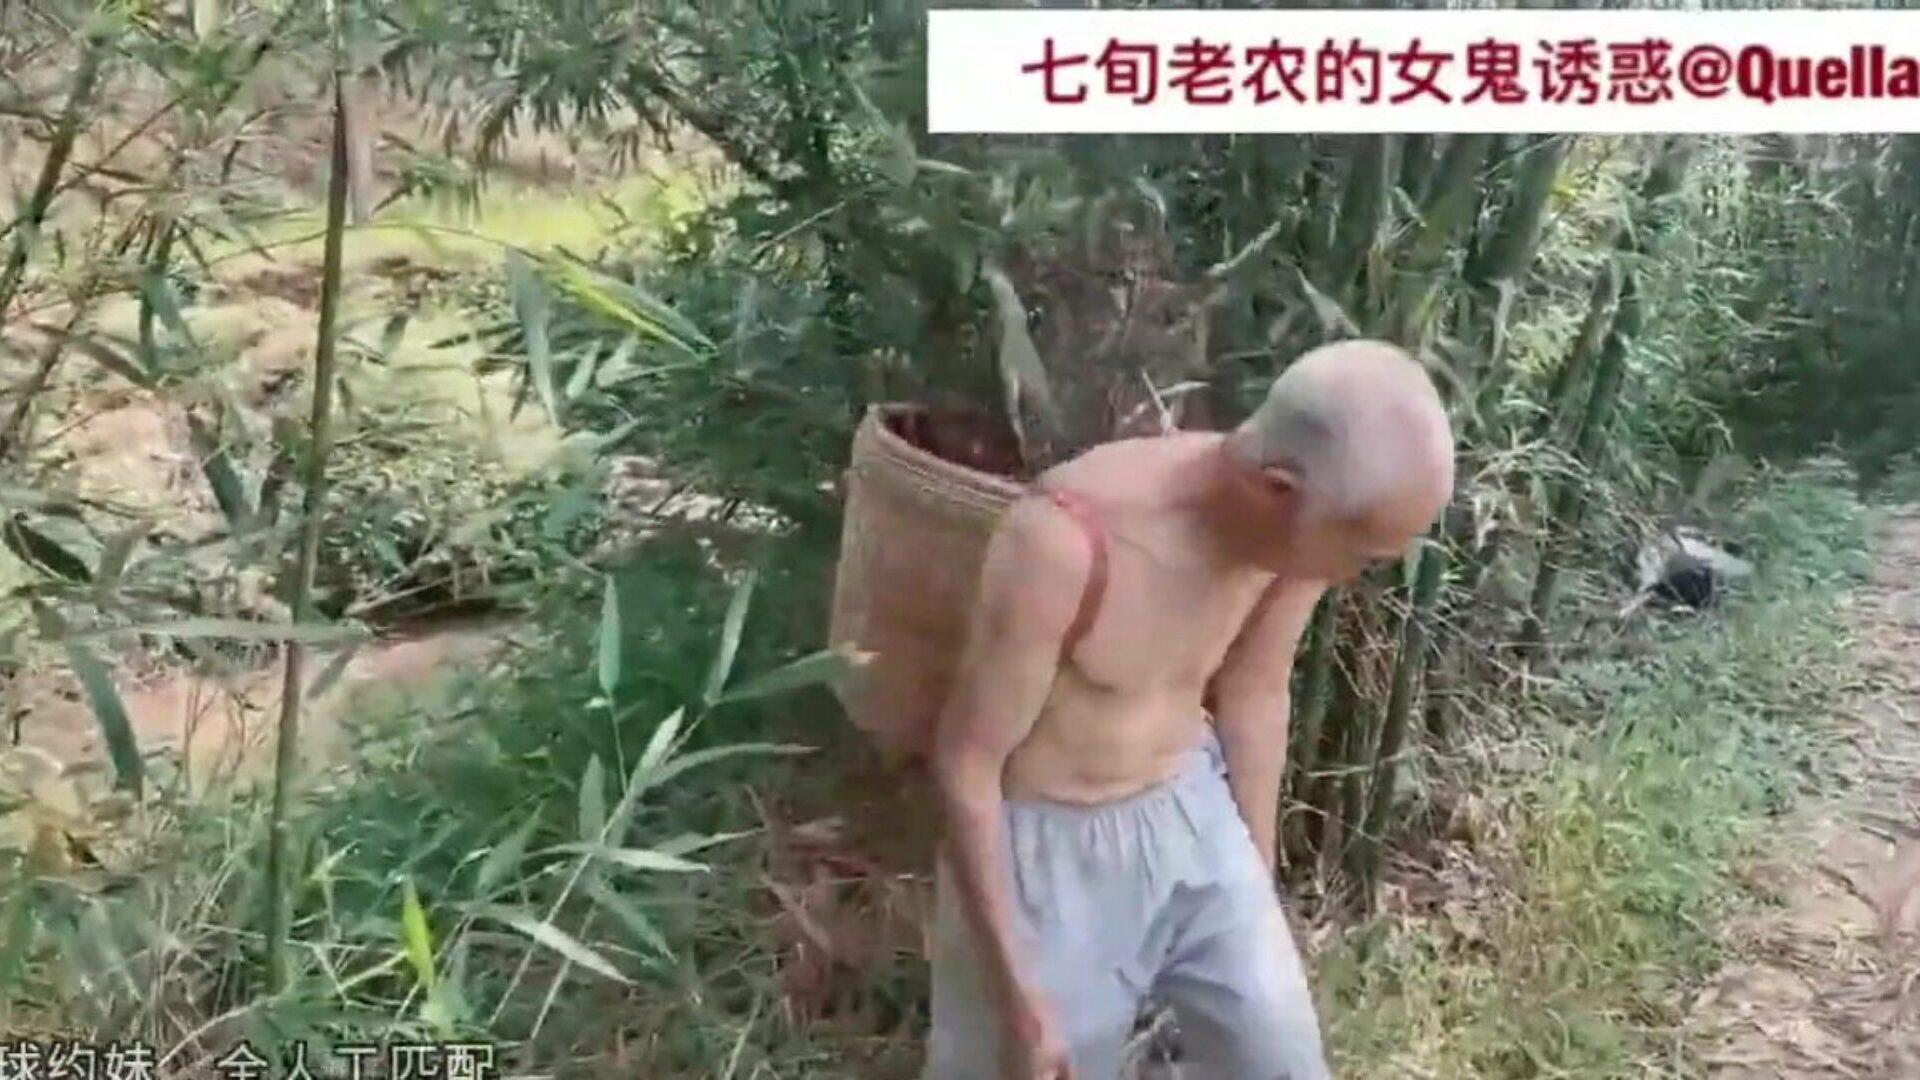 dobrodružství starších čínských av70, hd porno 22: xhamster sledujte dobrodružství starších čínských av70 epizod na xhamsteru, masivní stránce s HD dovádění s hromadou bezplatných asijských čínských videí a starých asijských pornografických filmů